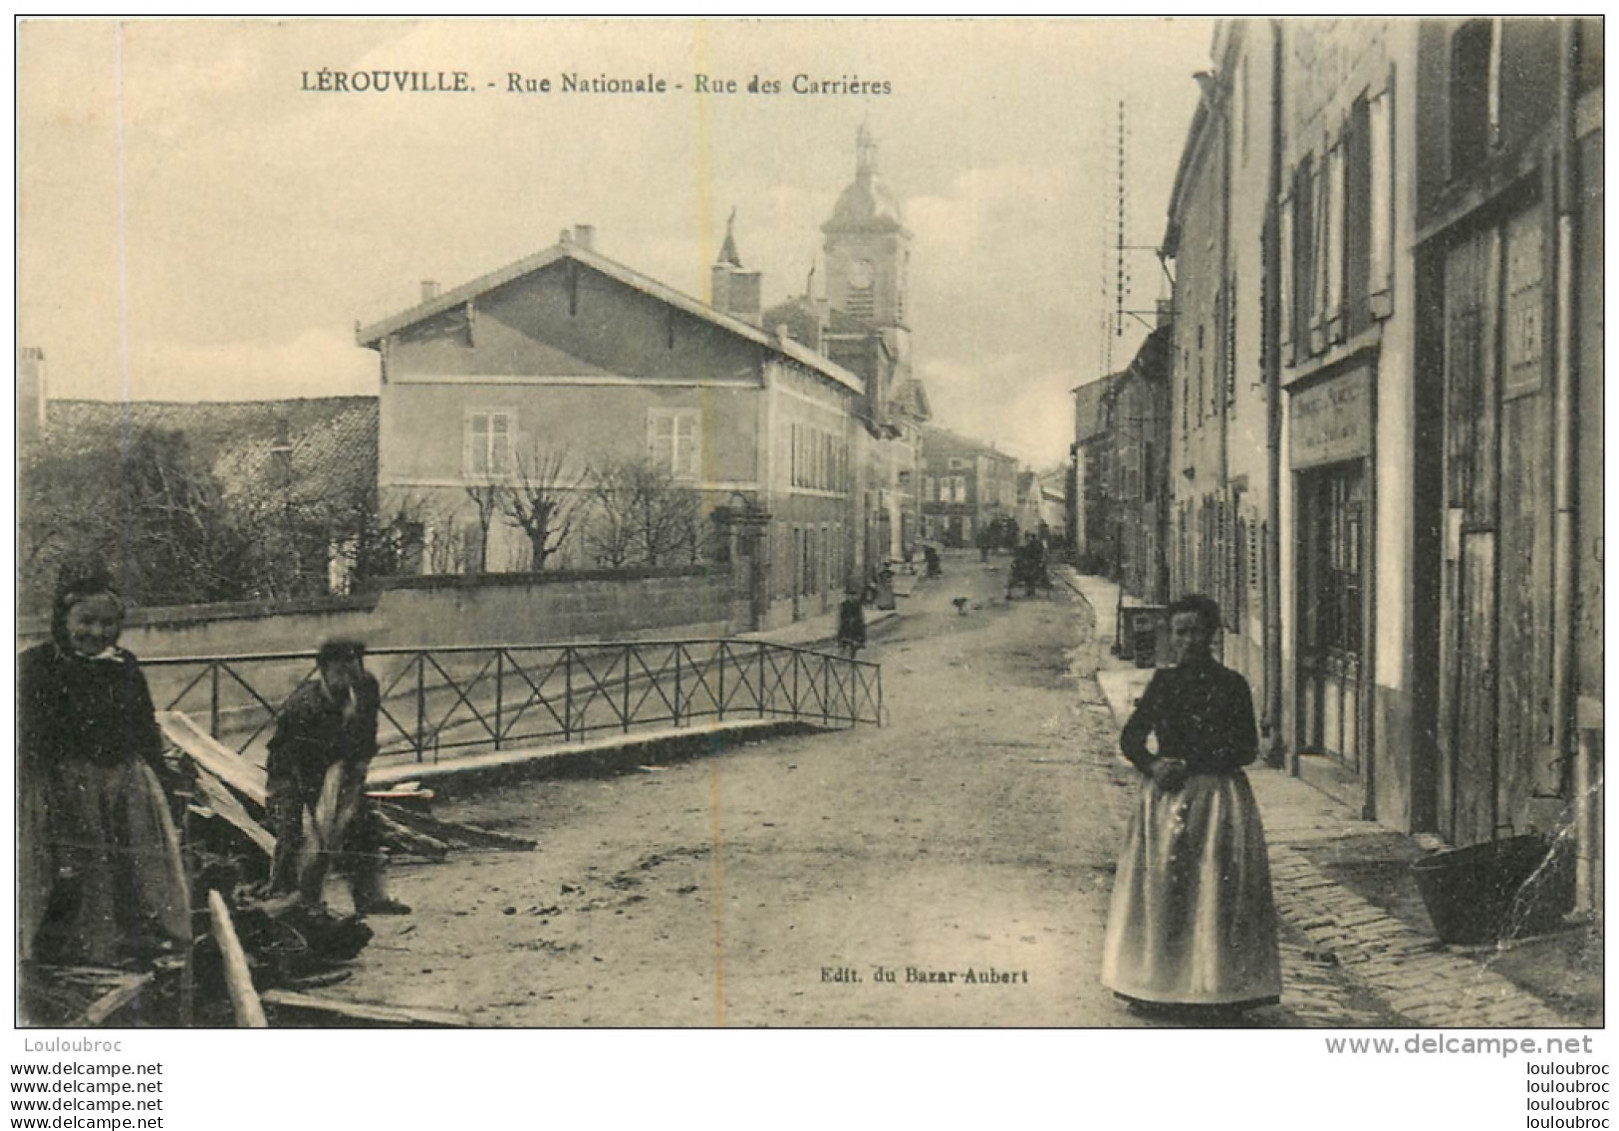 LEROUVILLE RUE NATIONALE RUE DES CARRIERES - Lerouville